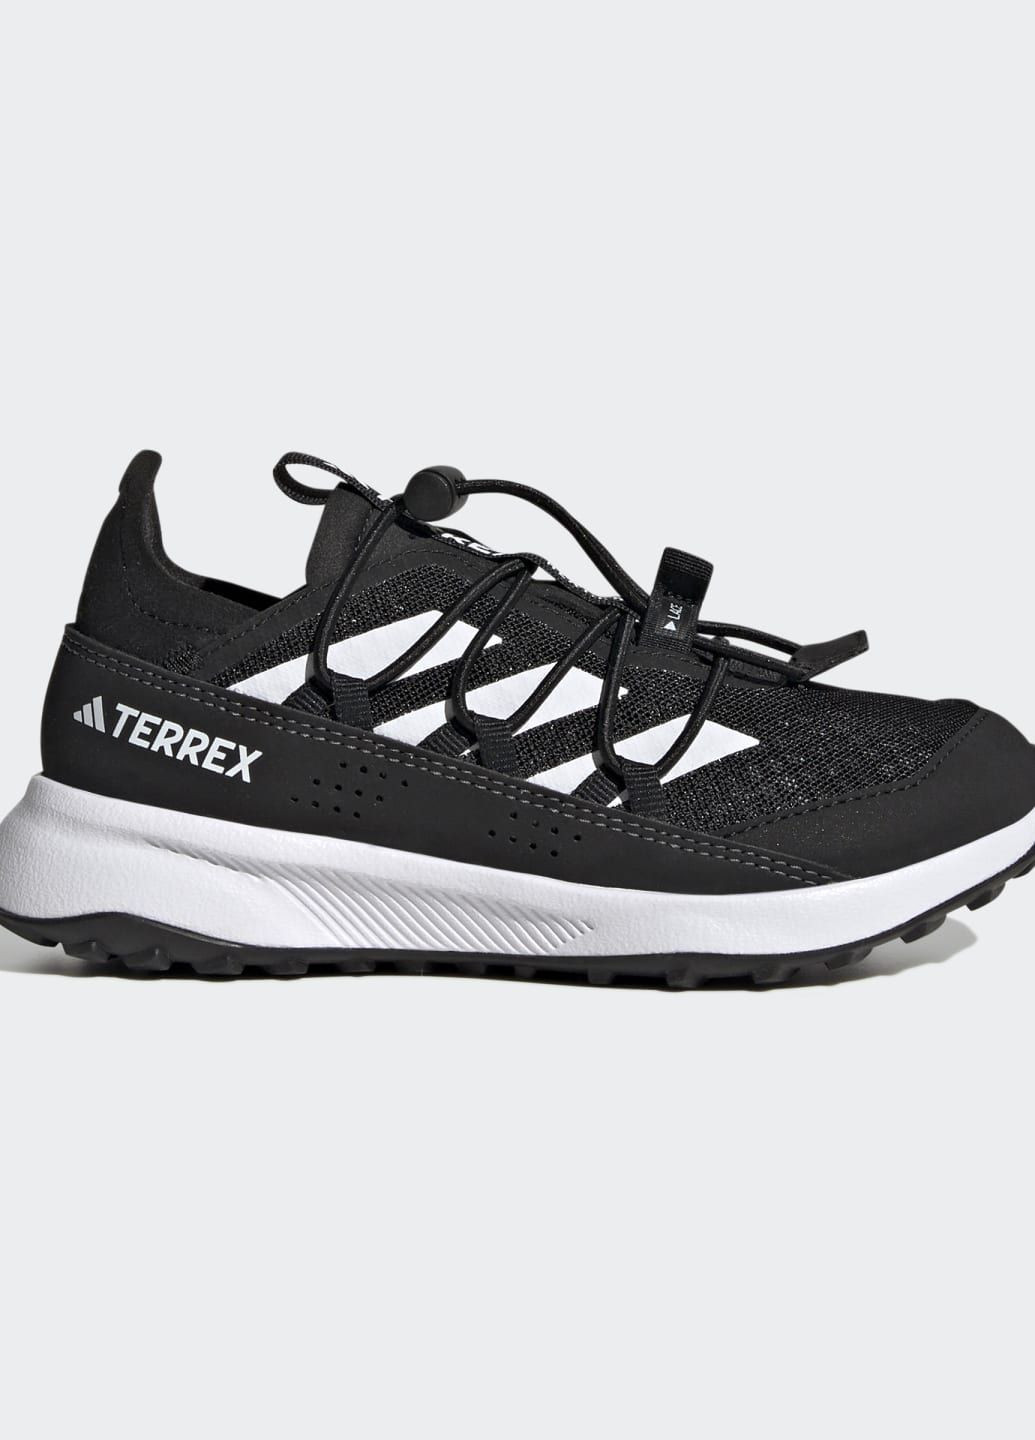 Черные всесезонные туристические кроссовки terrex voyager 21 heat.rdy adidas